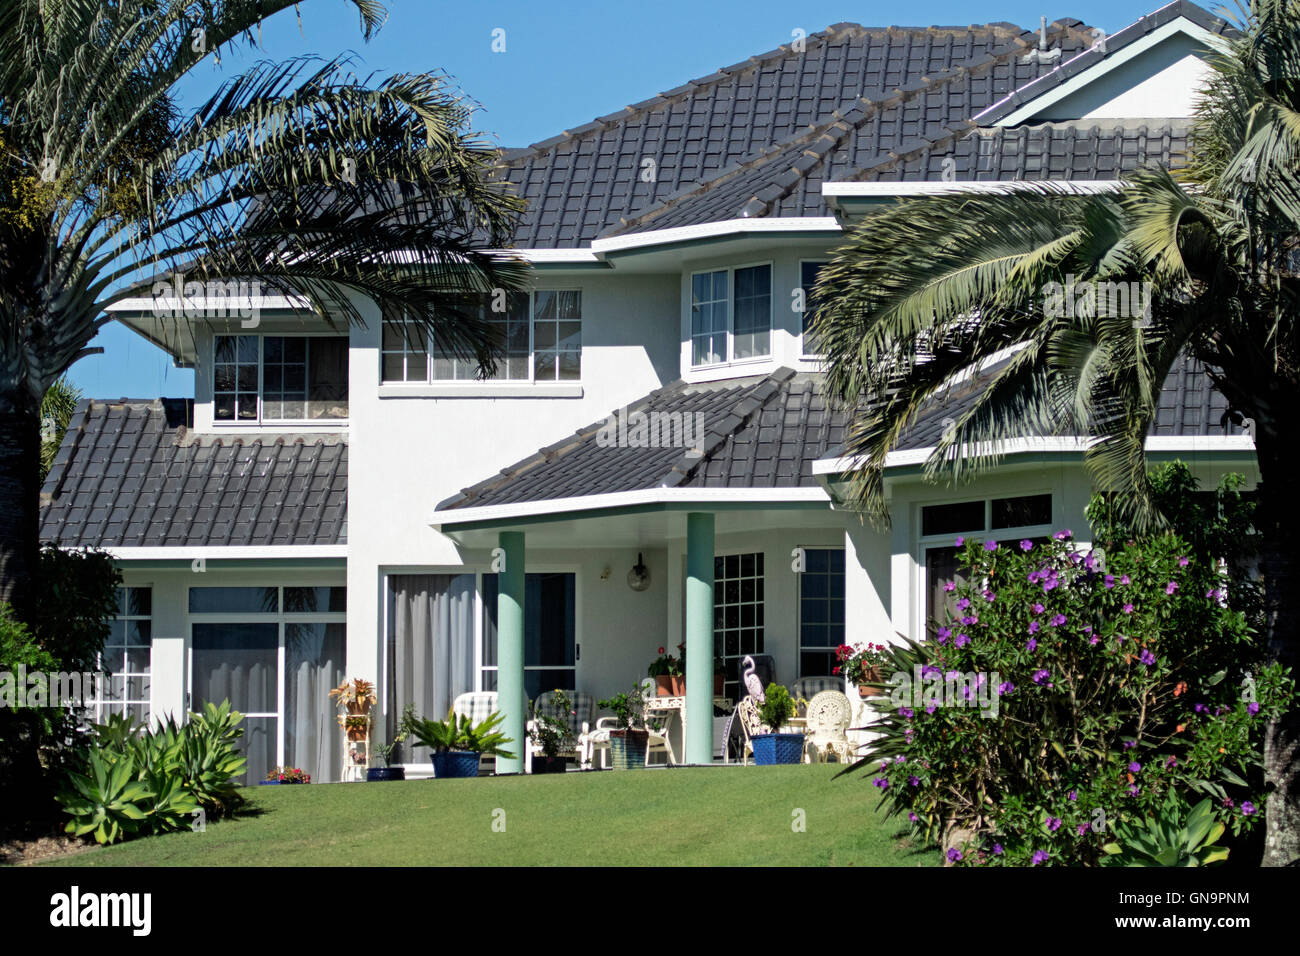 Moderne luxuriöse zweistöckiges Haus mit schwarz gefliest Dach, weiße Wände, Veranda, Garten mit Rasen, blühenden Sträuchern, Palmen, Stockfoto